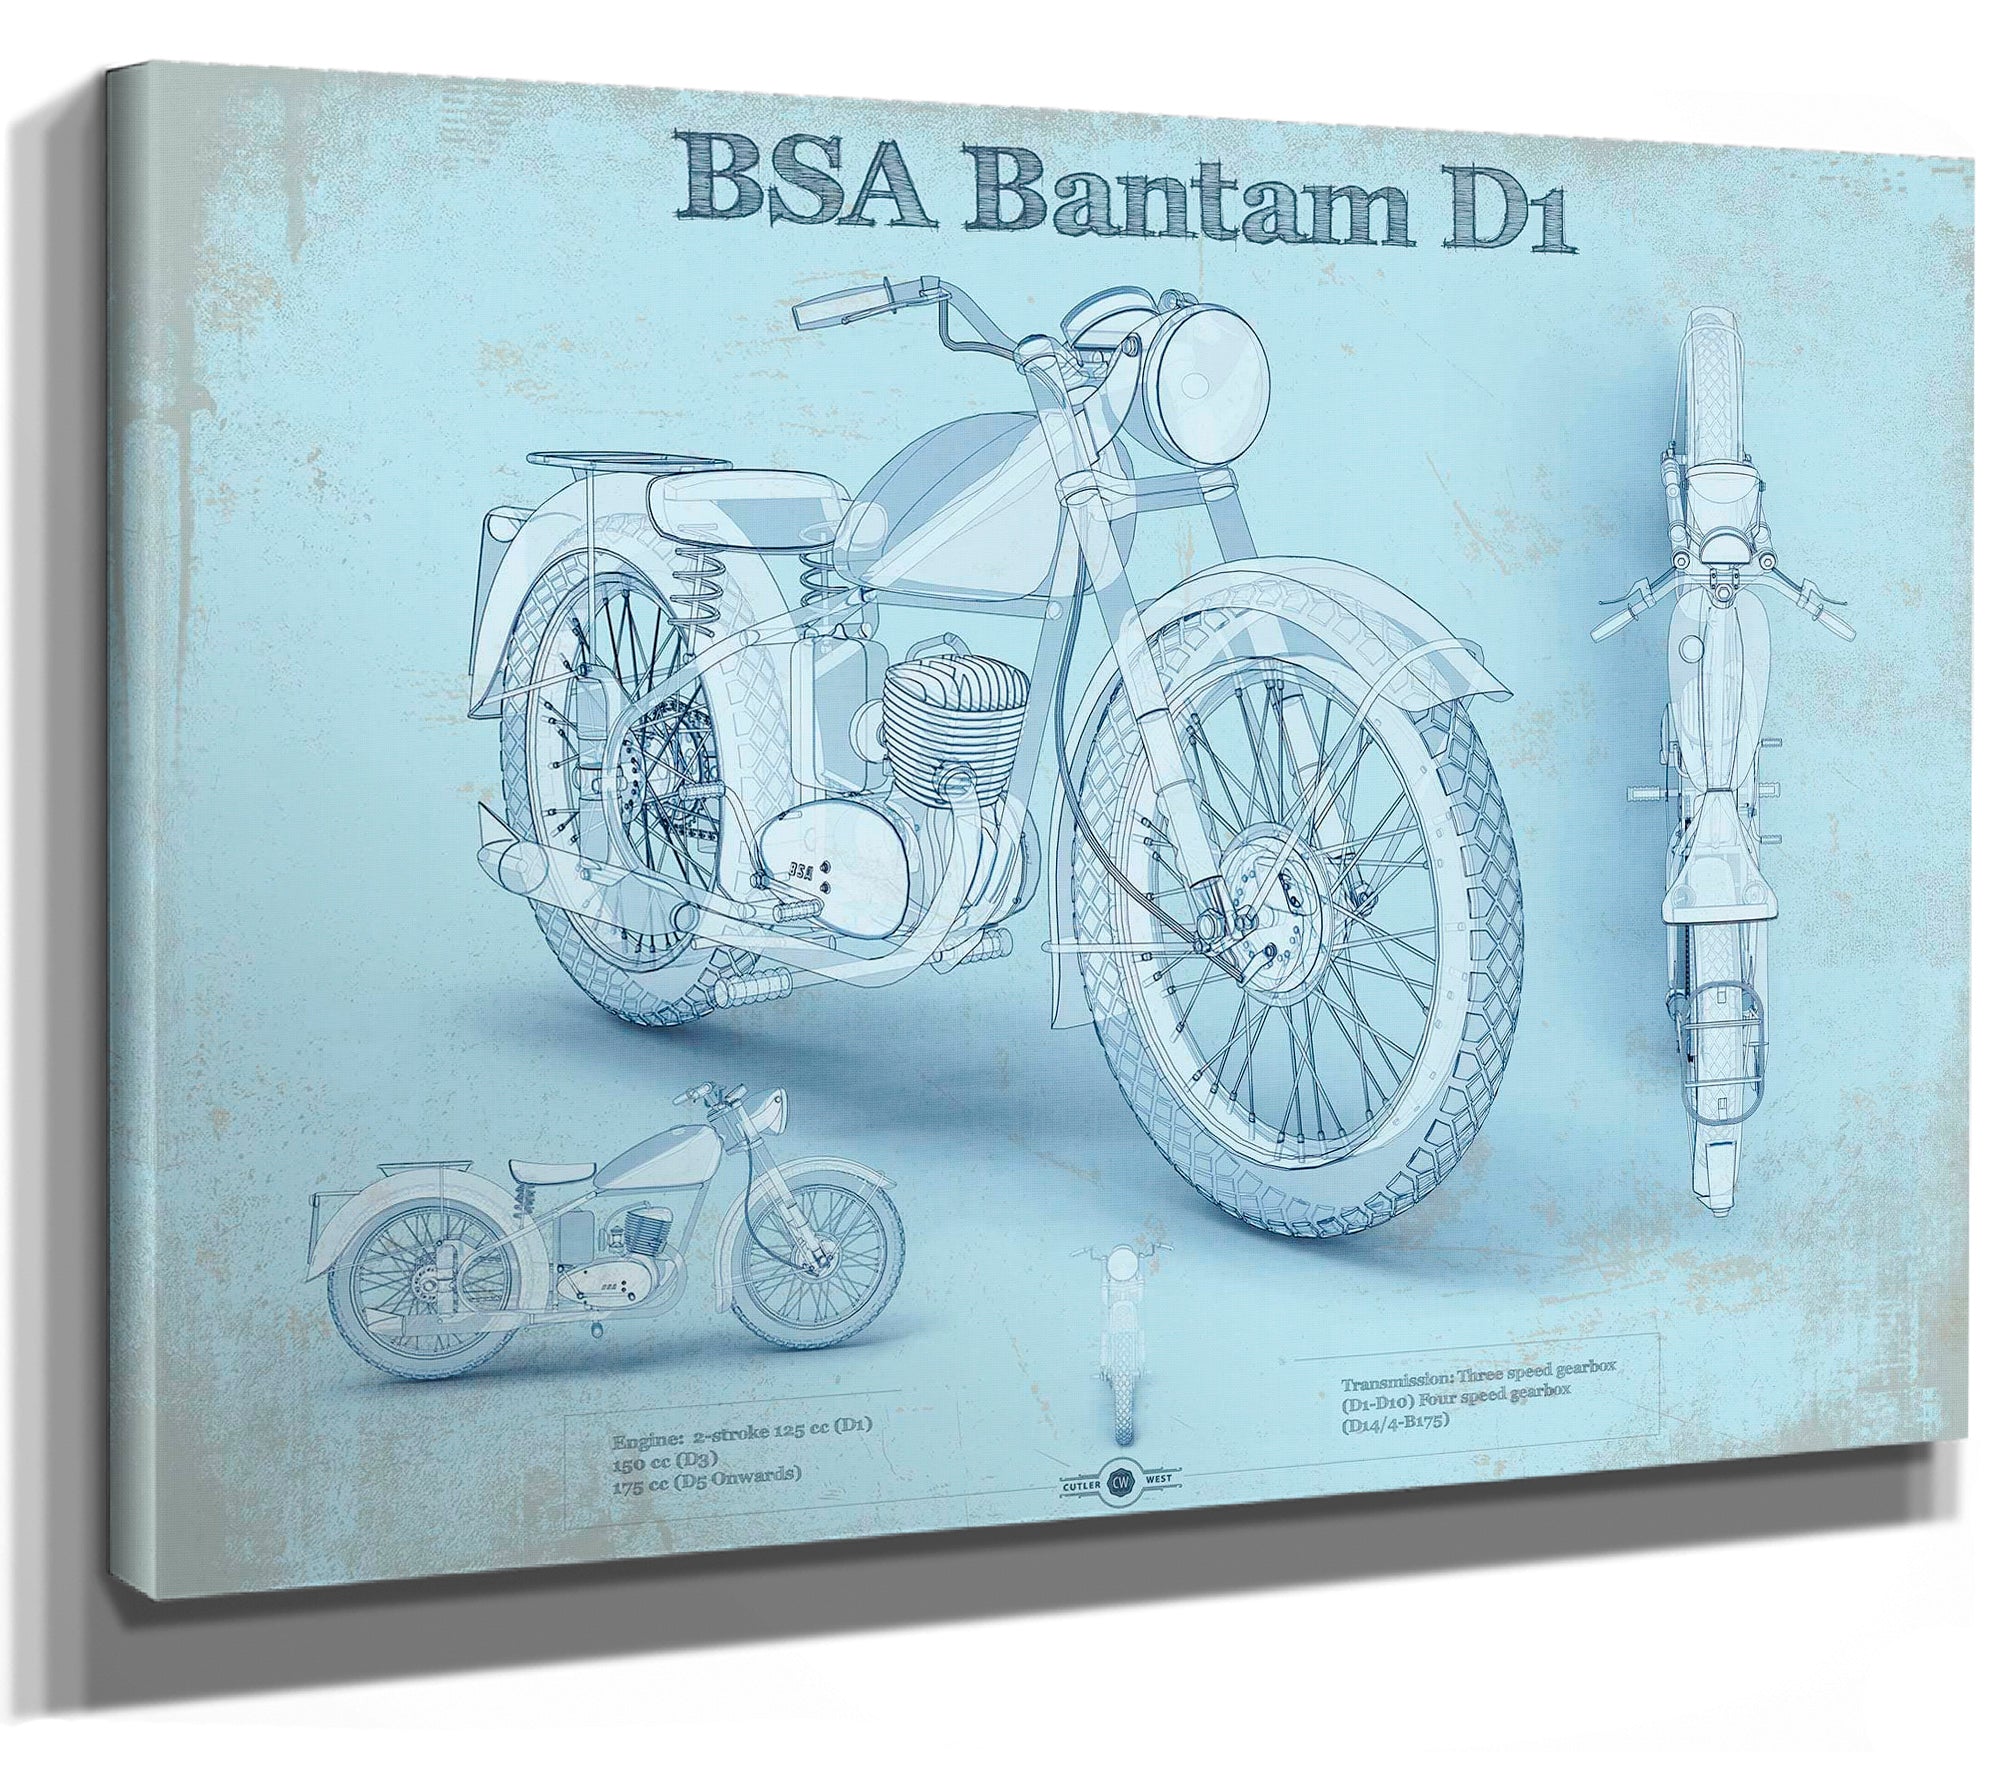 BSA Bantam D1 Blueprint Motorcycle Patent Print